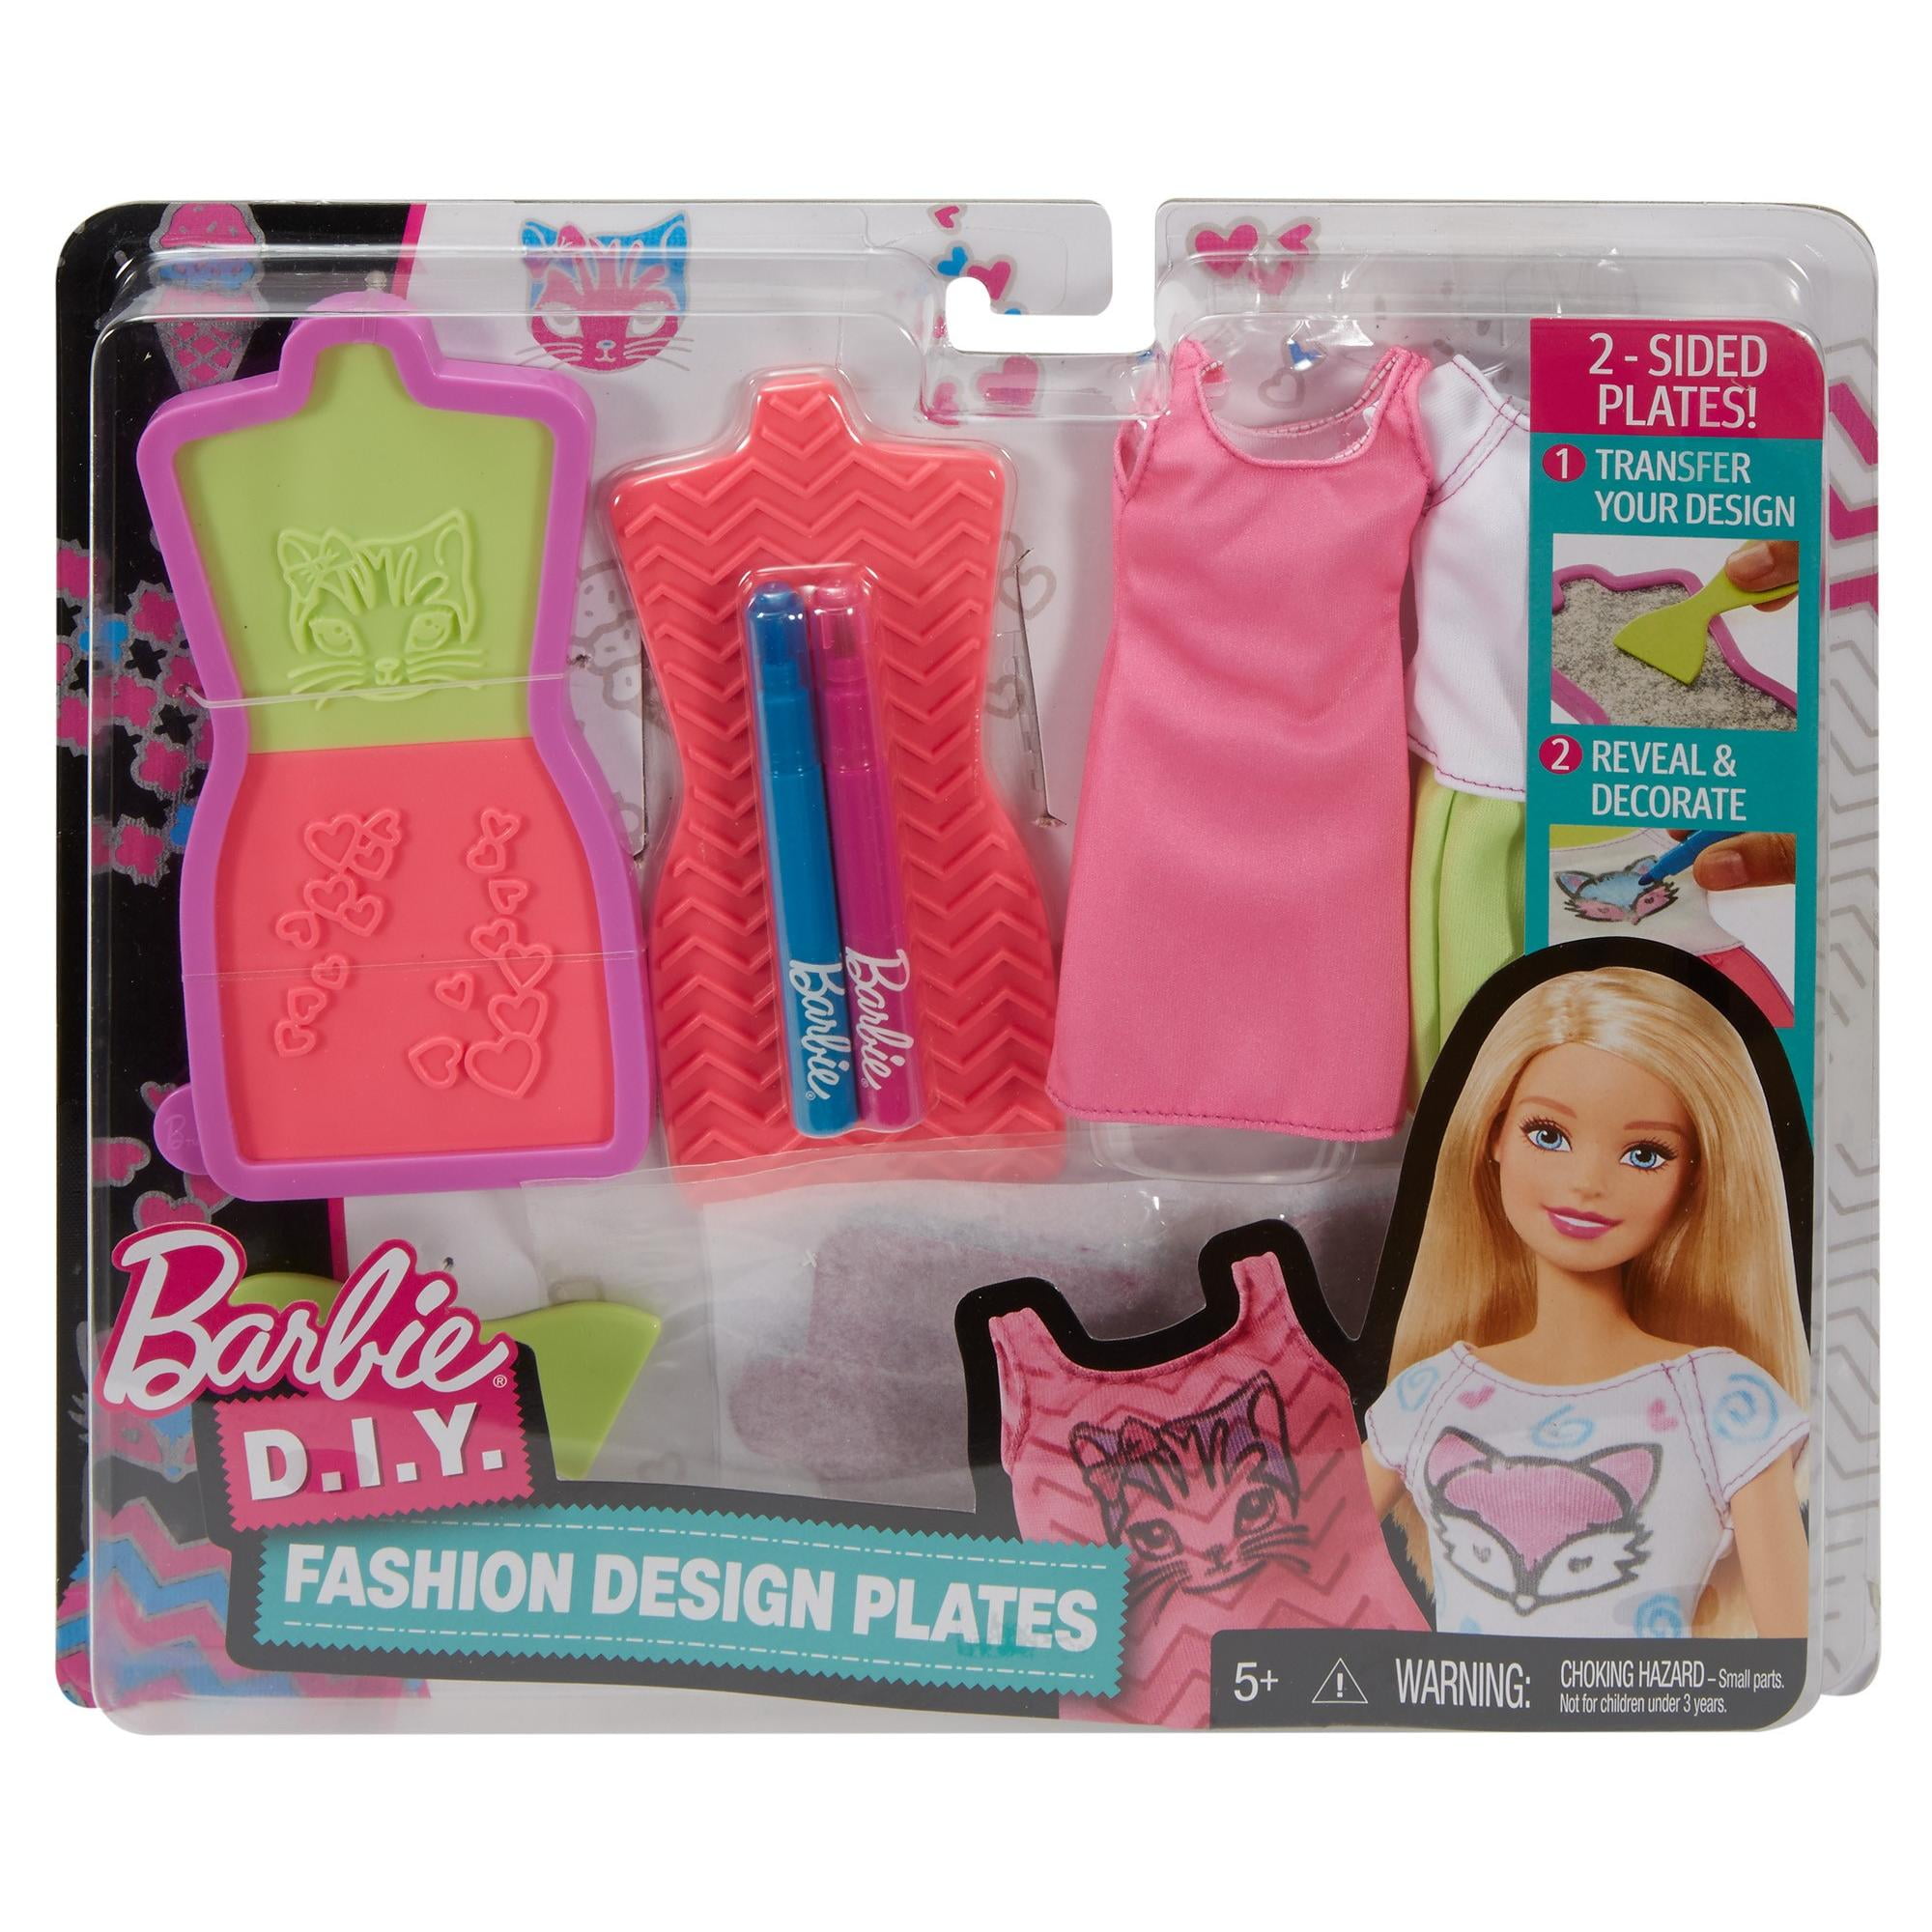 Barbie D.I.Y. Fashion Design Plates 